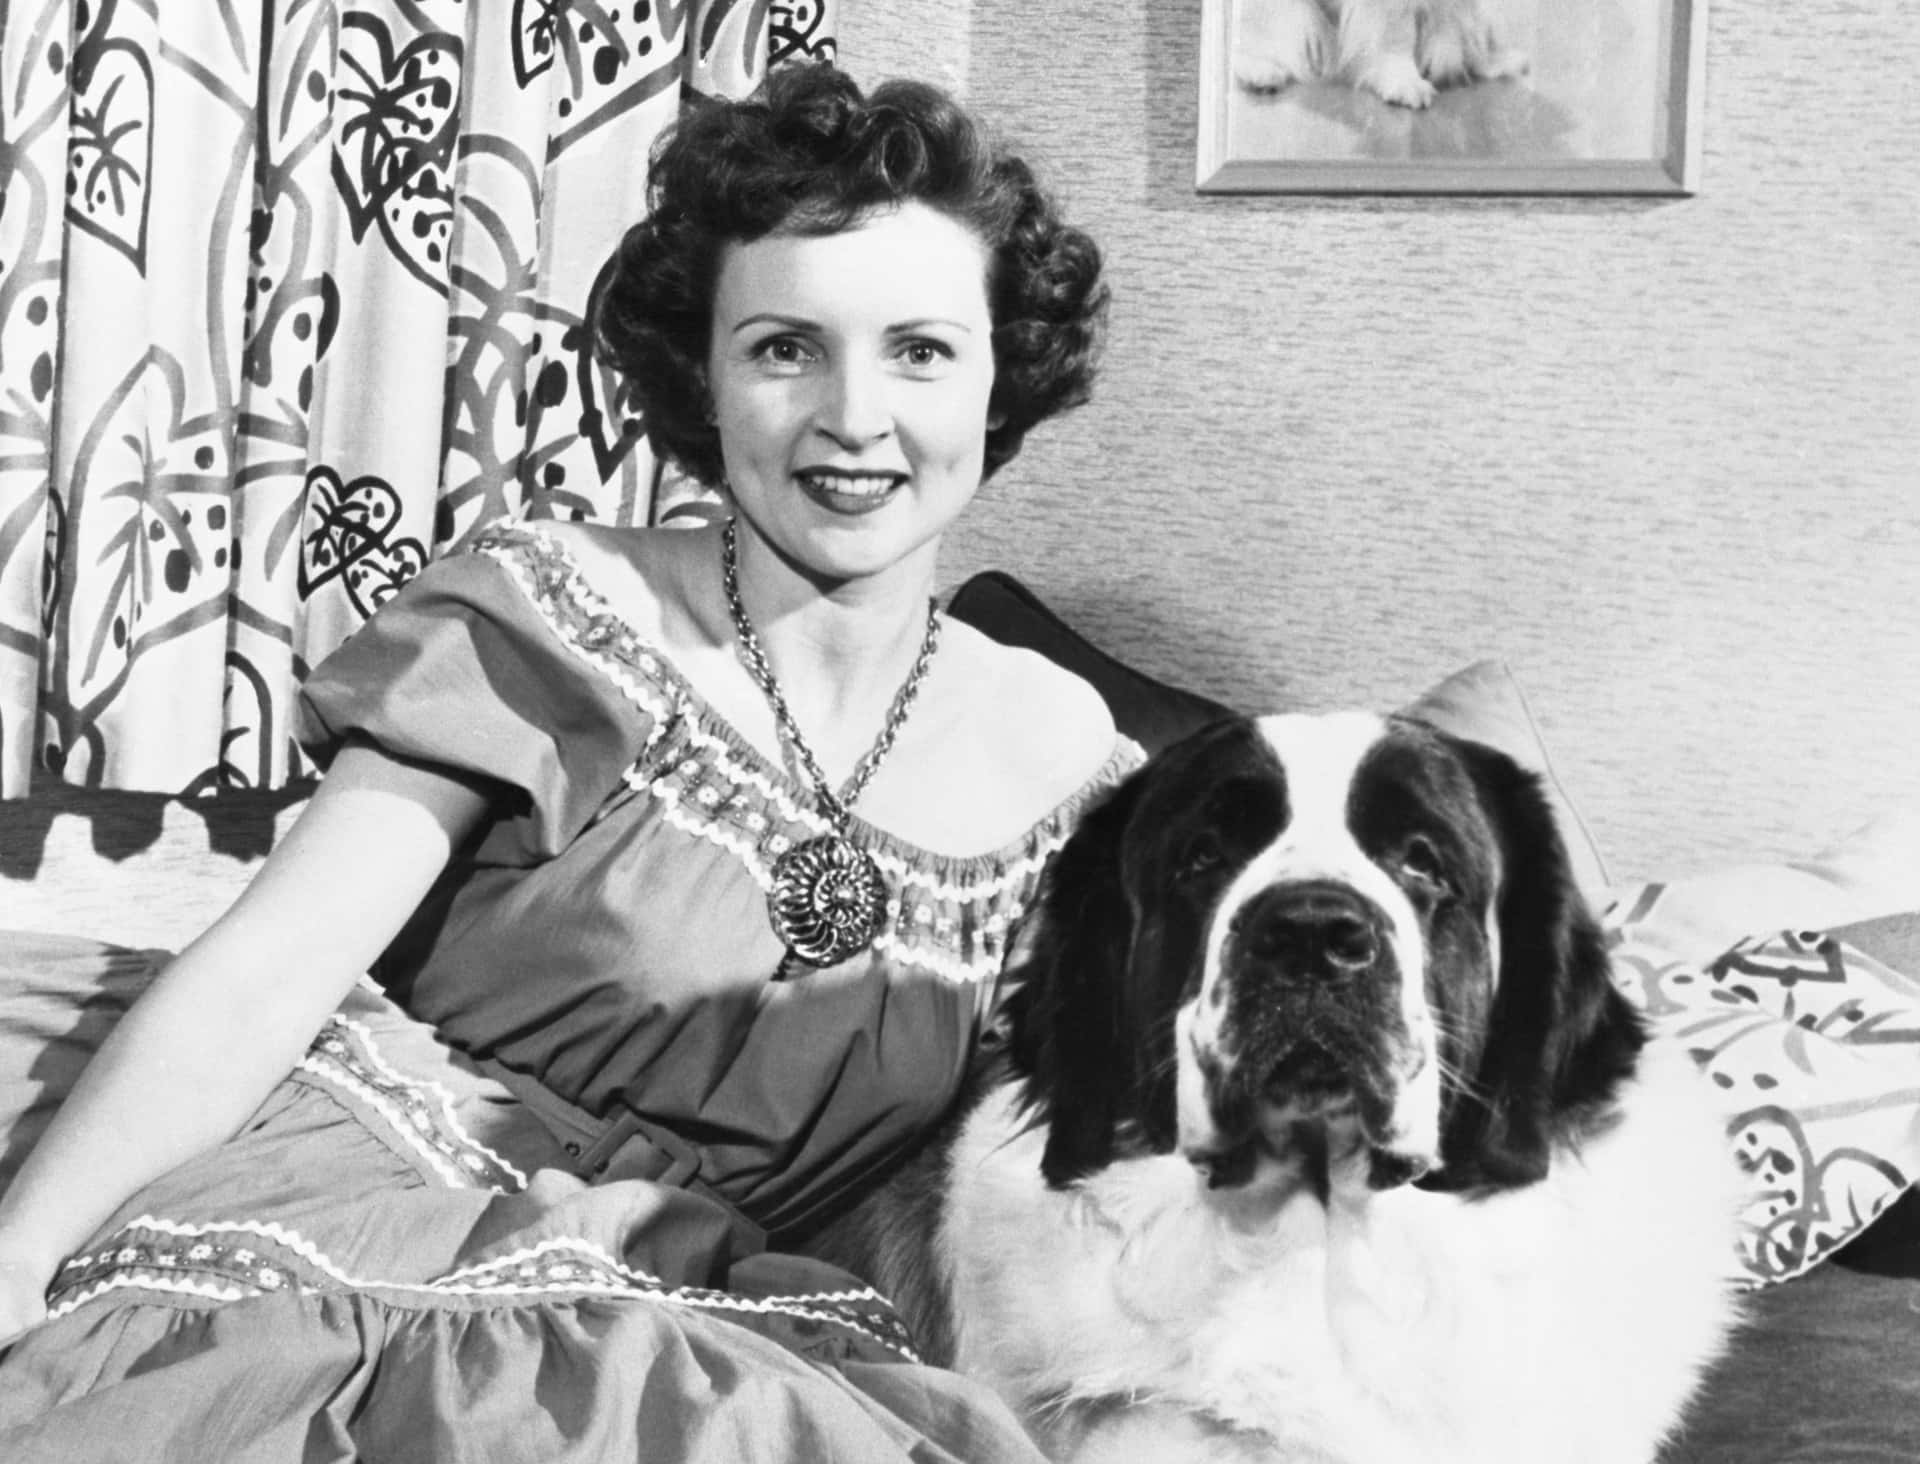 Legendärekomikerin Und Schauspielerin, Betty White